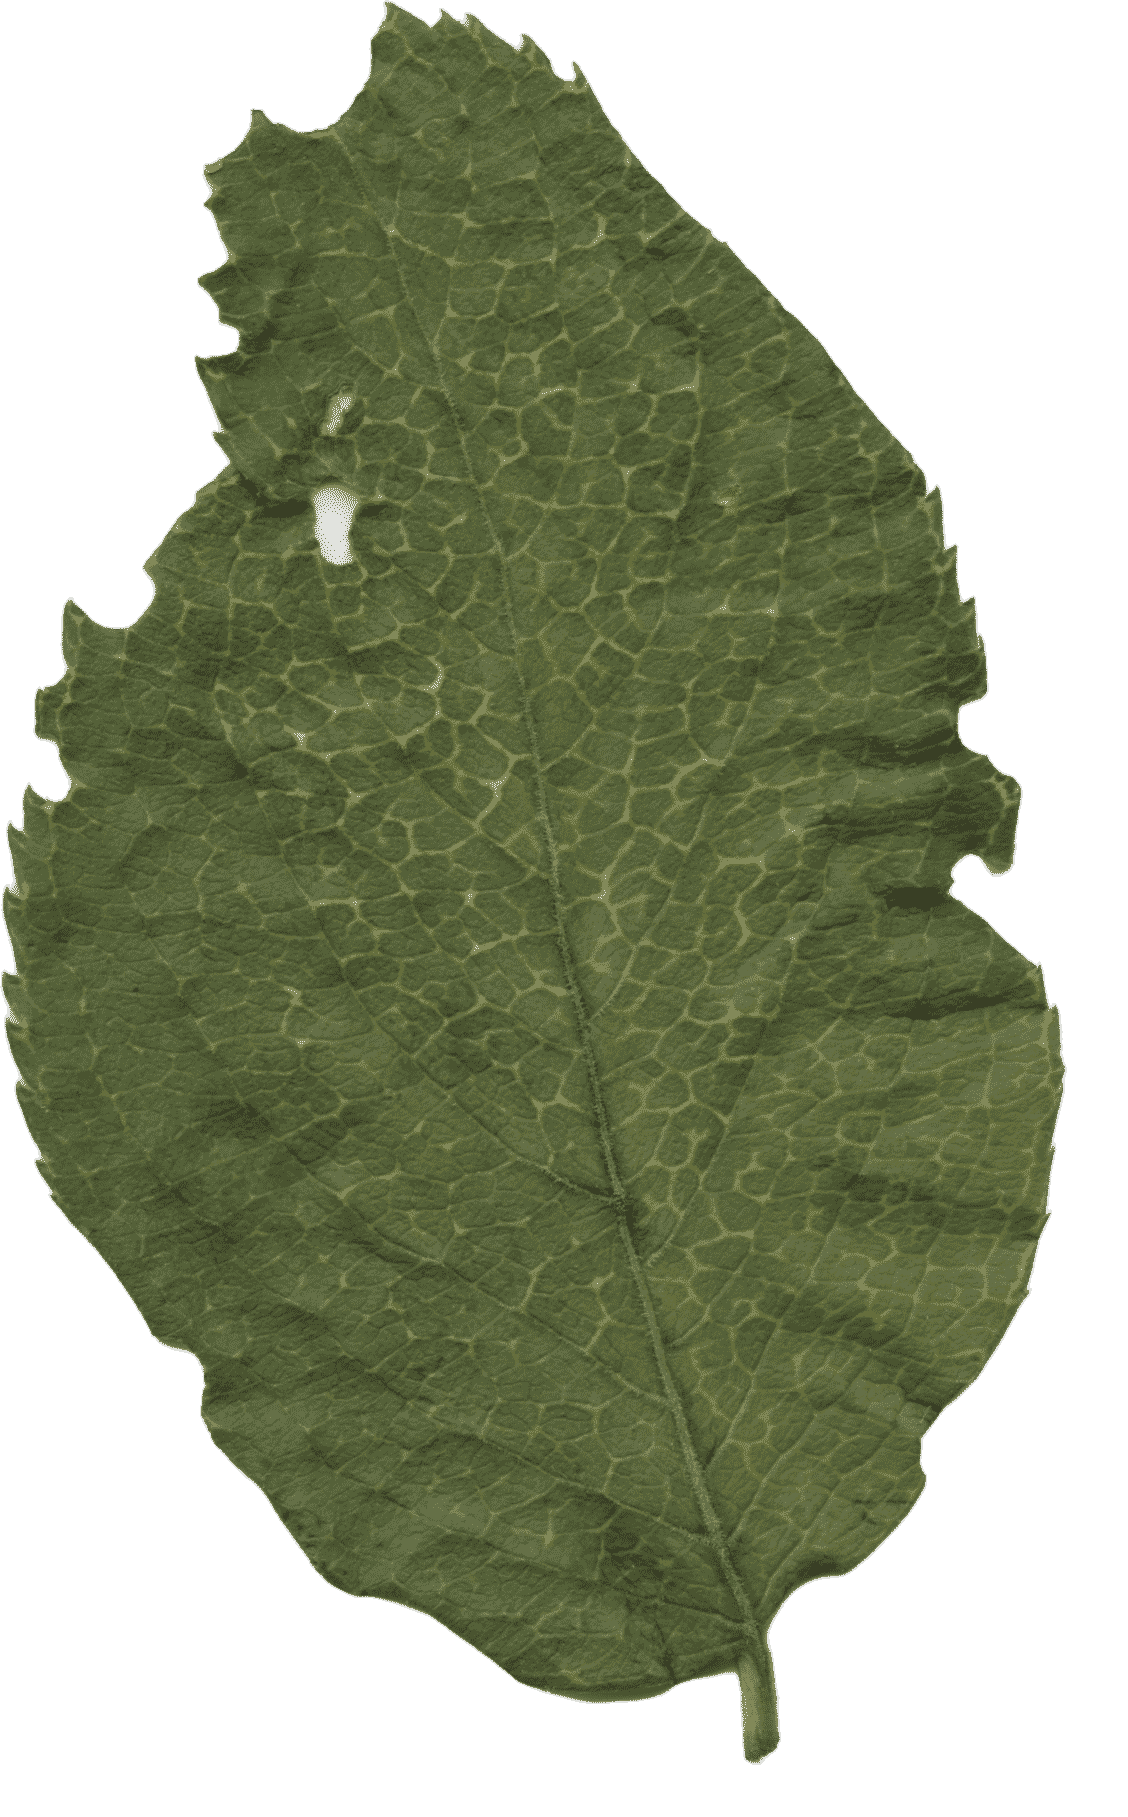 Animated leaf